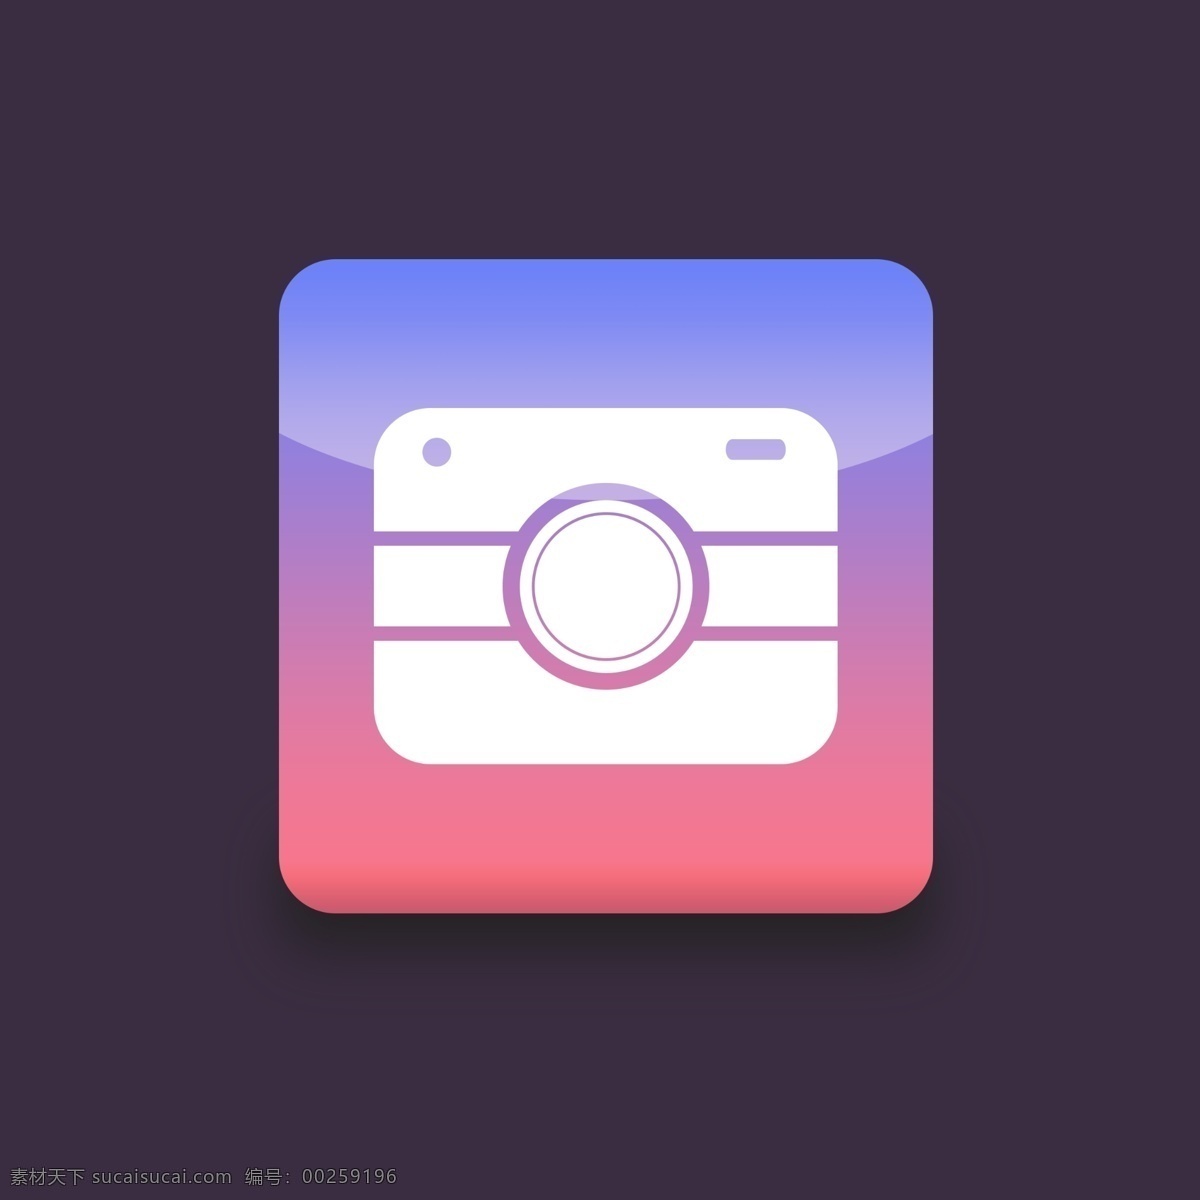 相机 图标 logo 图案 icon 照相机 扁平化 扁平化照相机 相机logo 相机icon 渐 变色 照相机图标 照相机图案